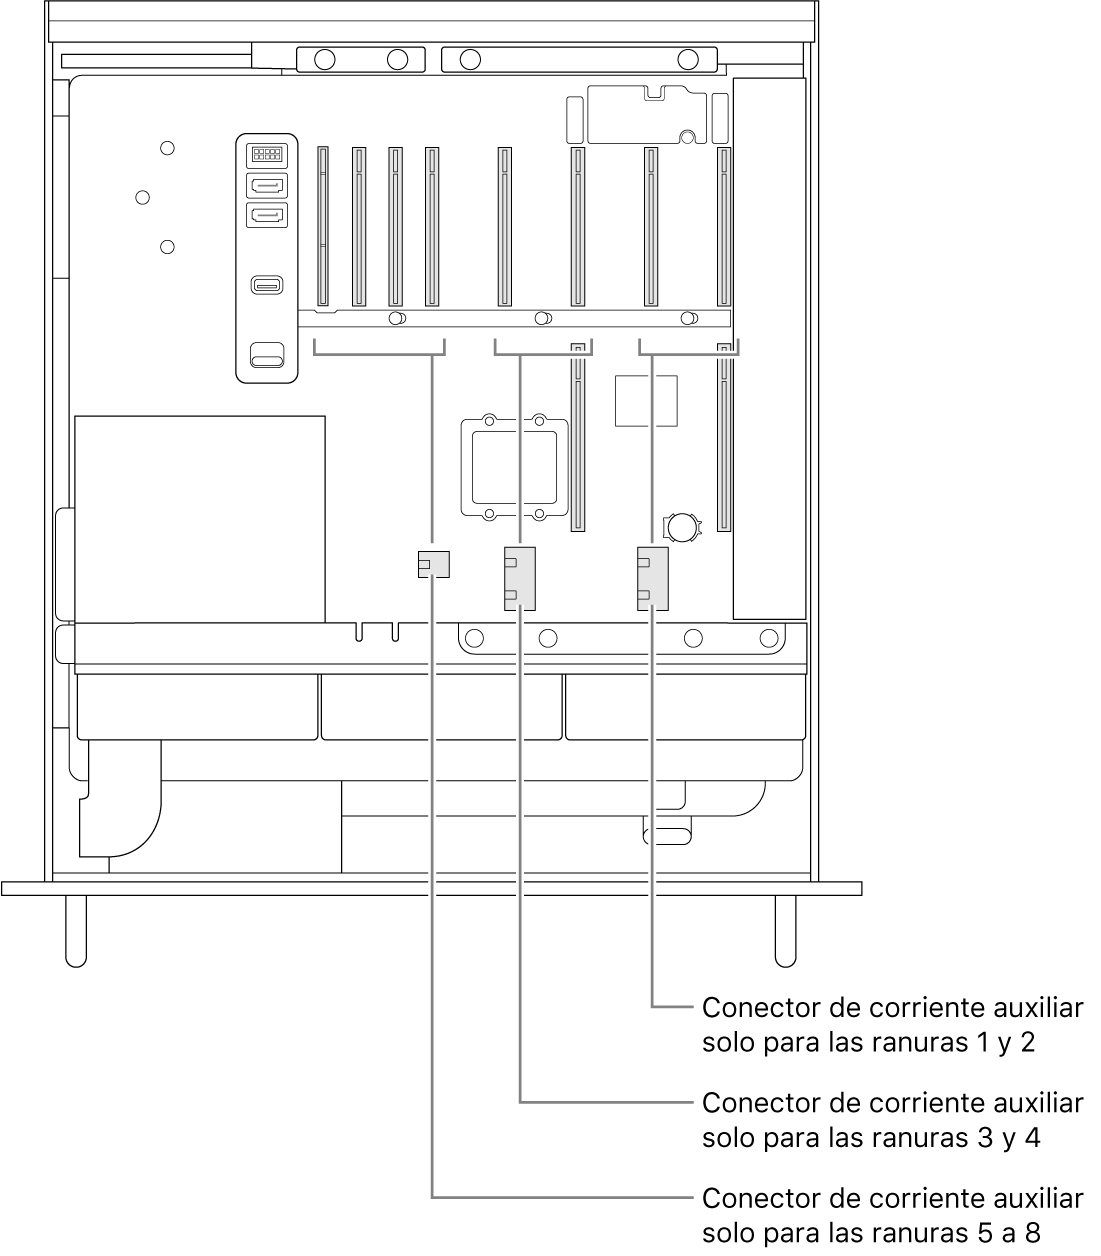 El lateral del Mac Pro abierto con indicaciones de qué ranuras están relacionadas con qué conectores de alimentación auxiliares.